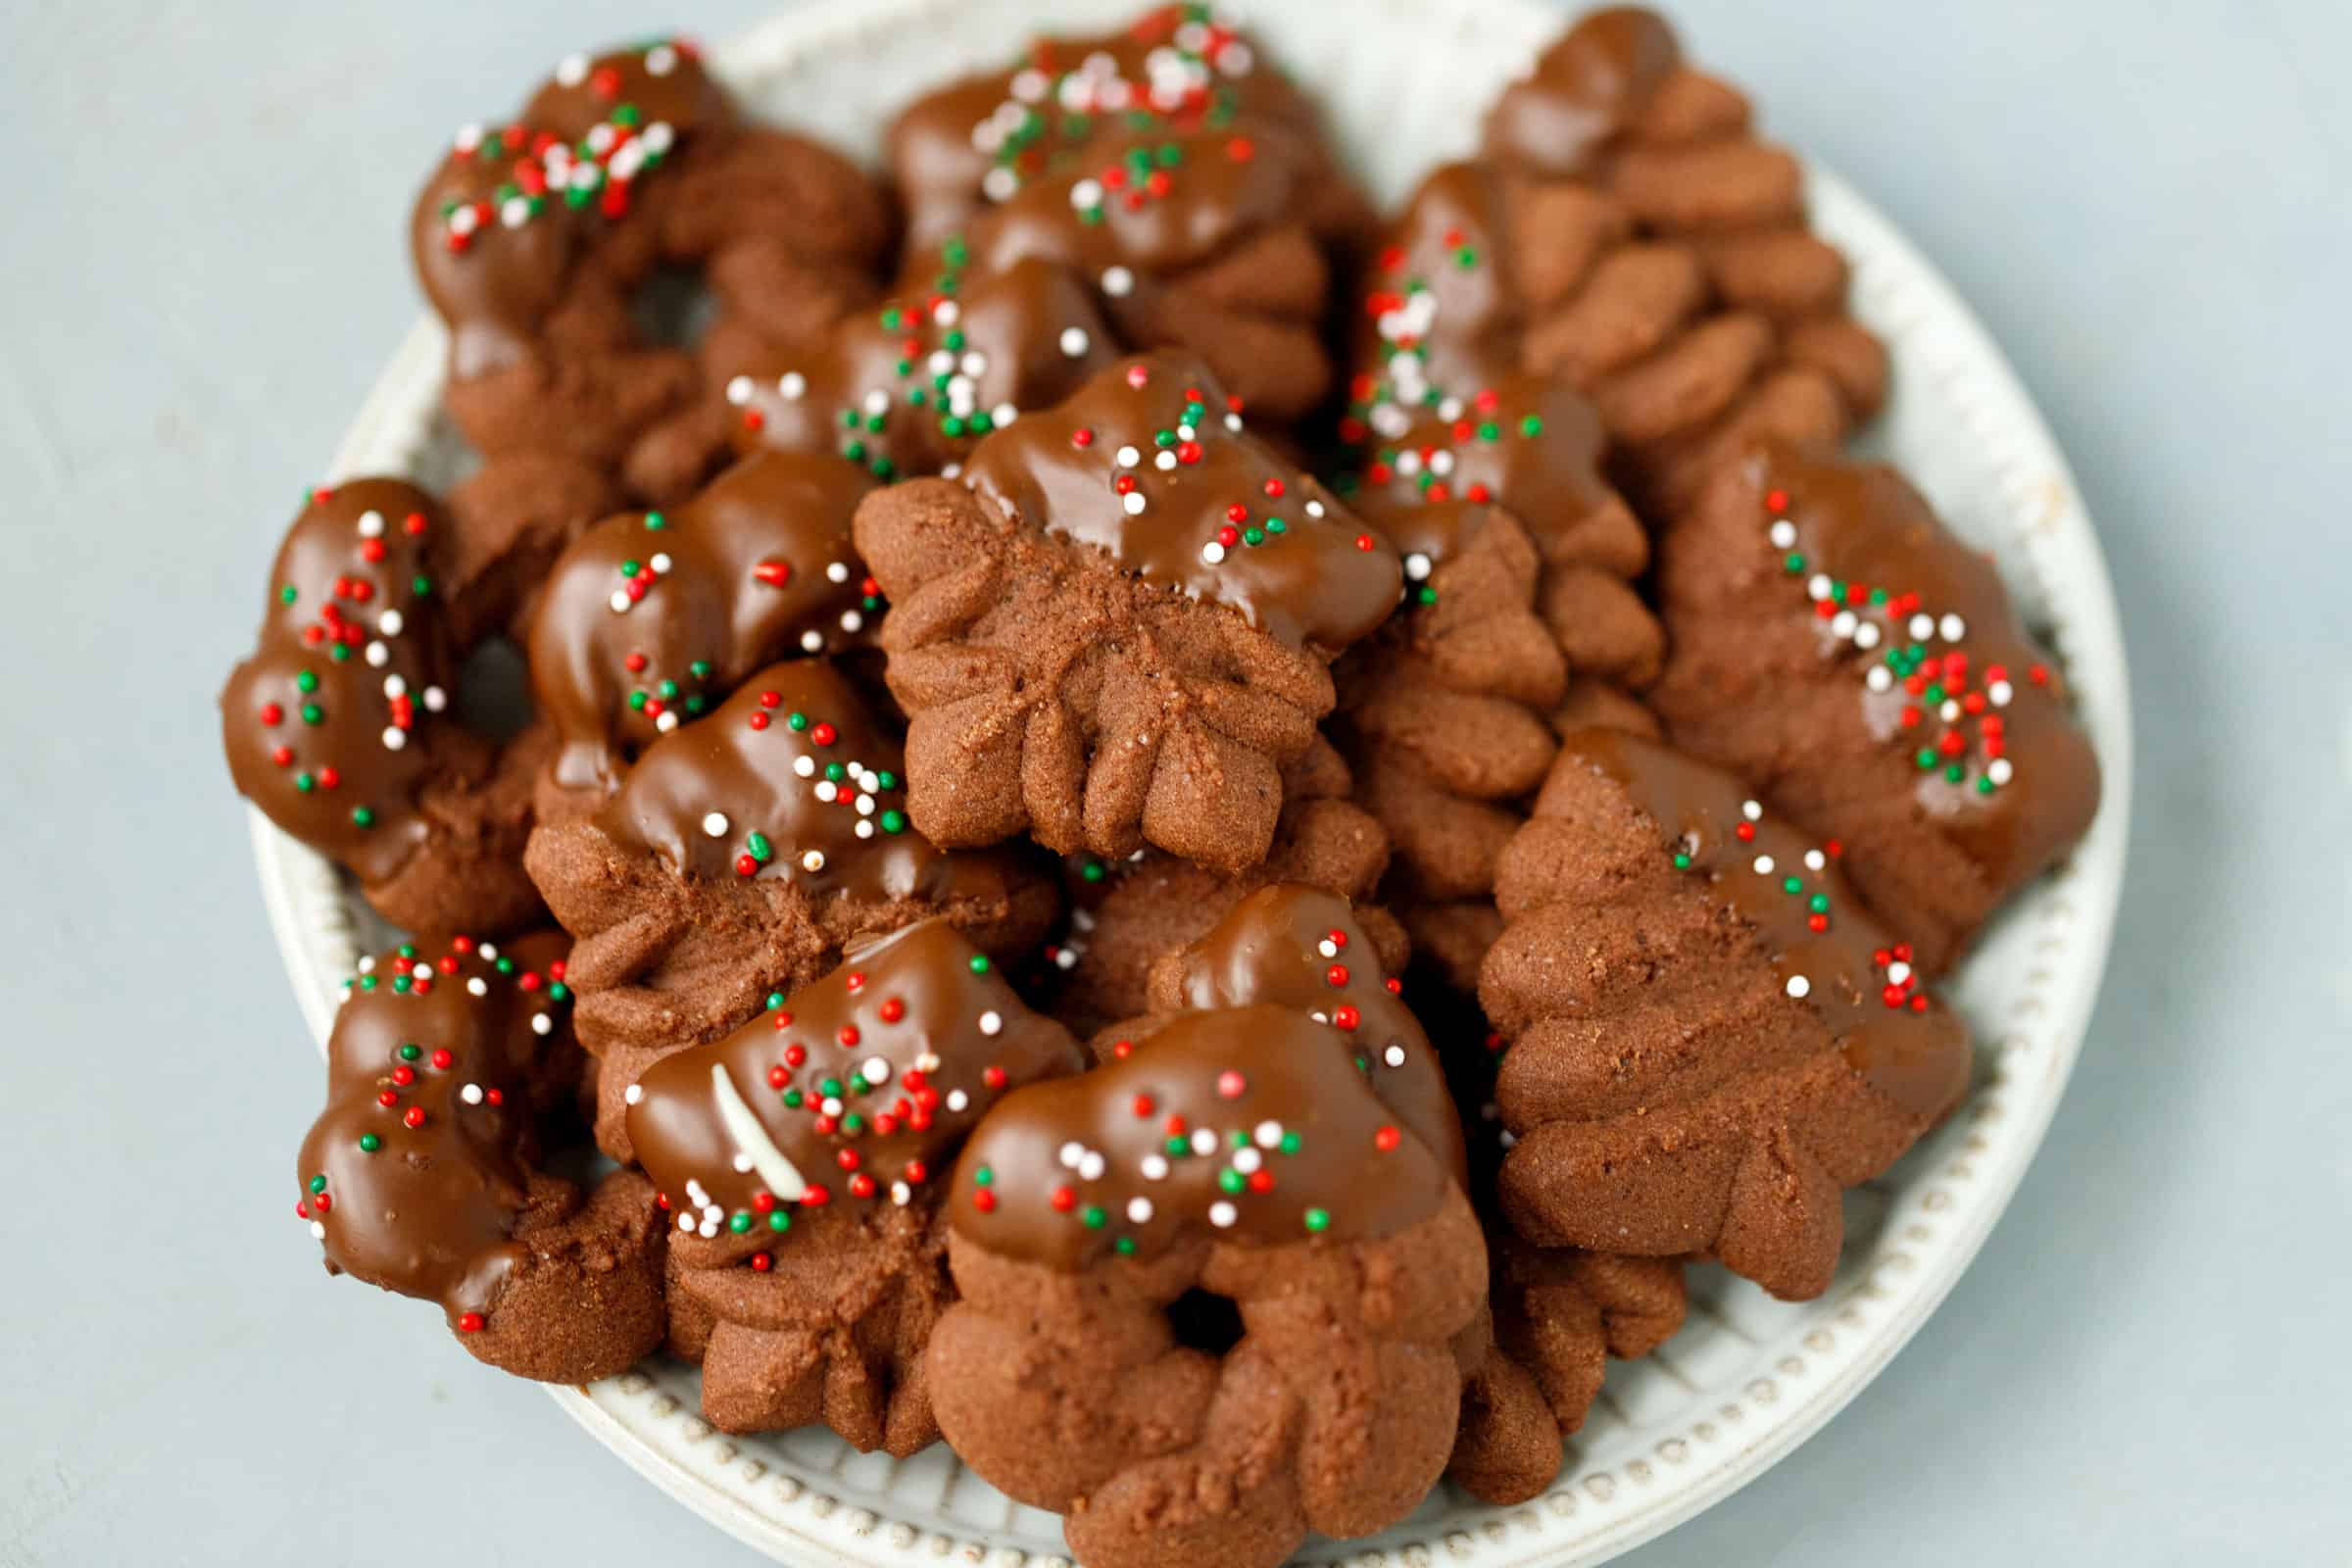 https://cookinglsl.com/wp-content/uploads/2020/12/chocolate-spritz-cookies-2.jpg